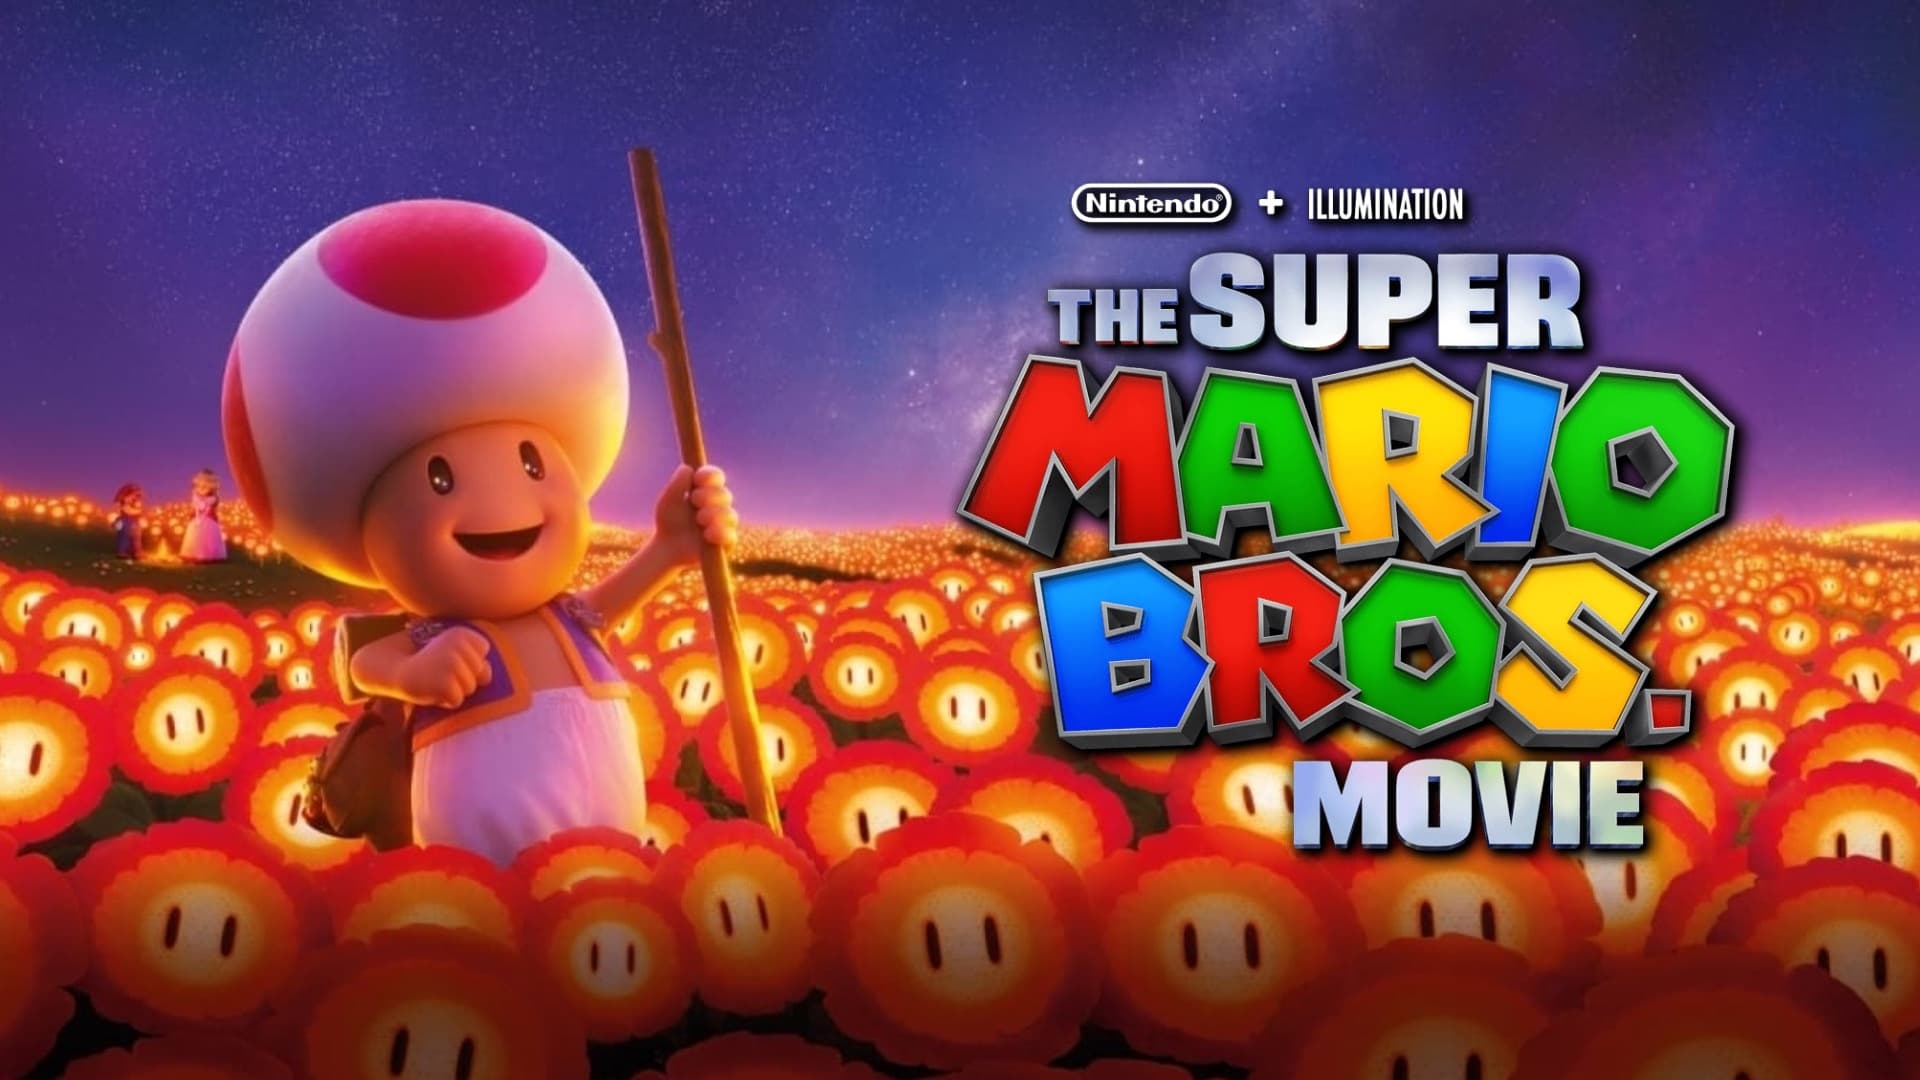 Супер Марио браћа филм (2023)